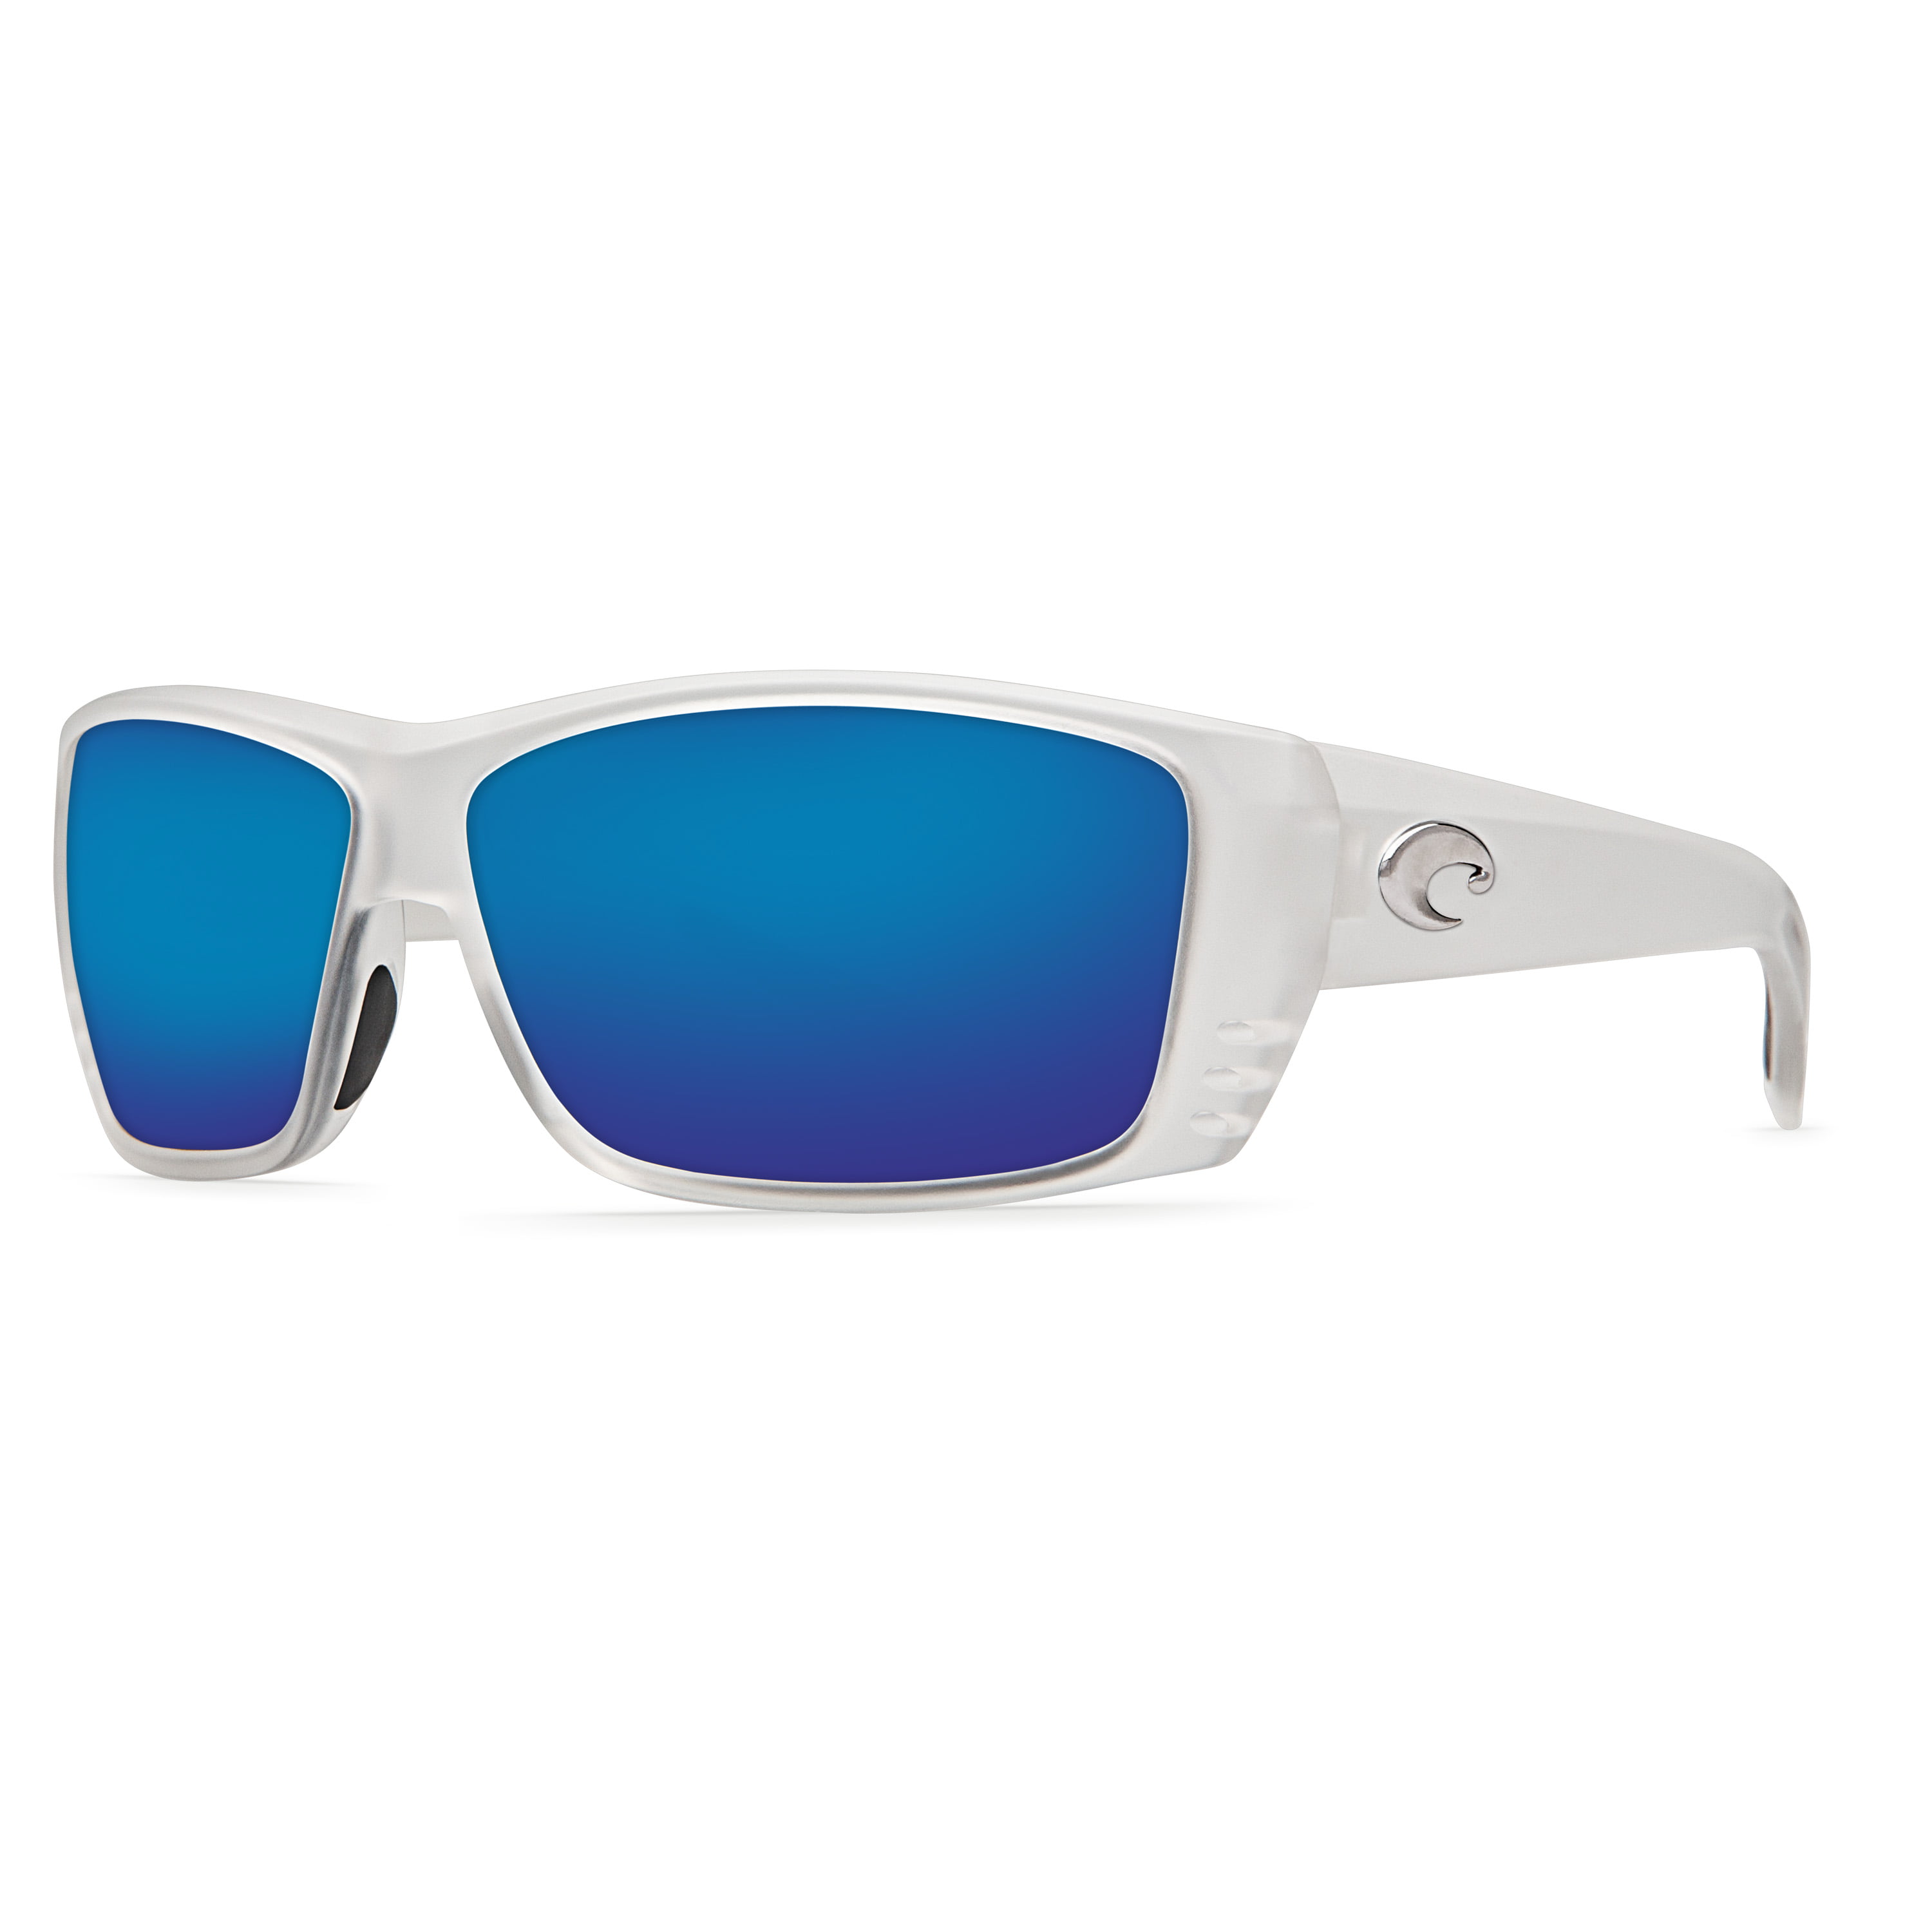 New Costa del Mar Caballito Polarized Sunglasses Black/Blue Mirror 400G Fishing